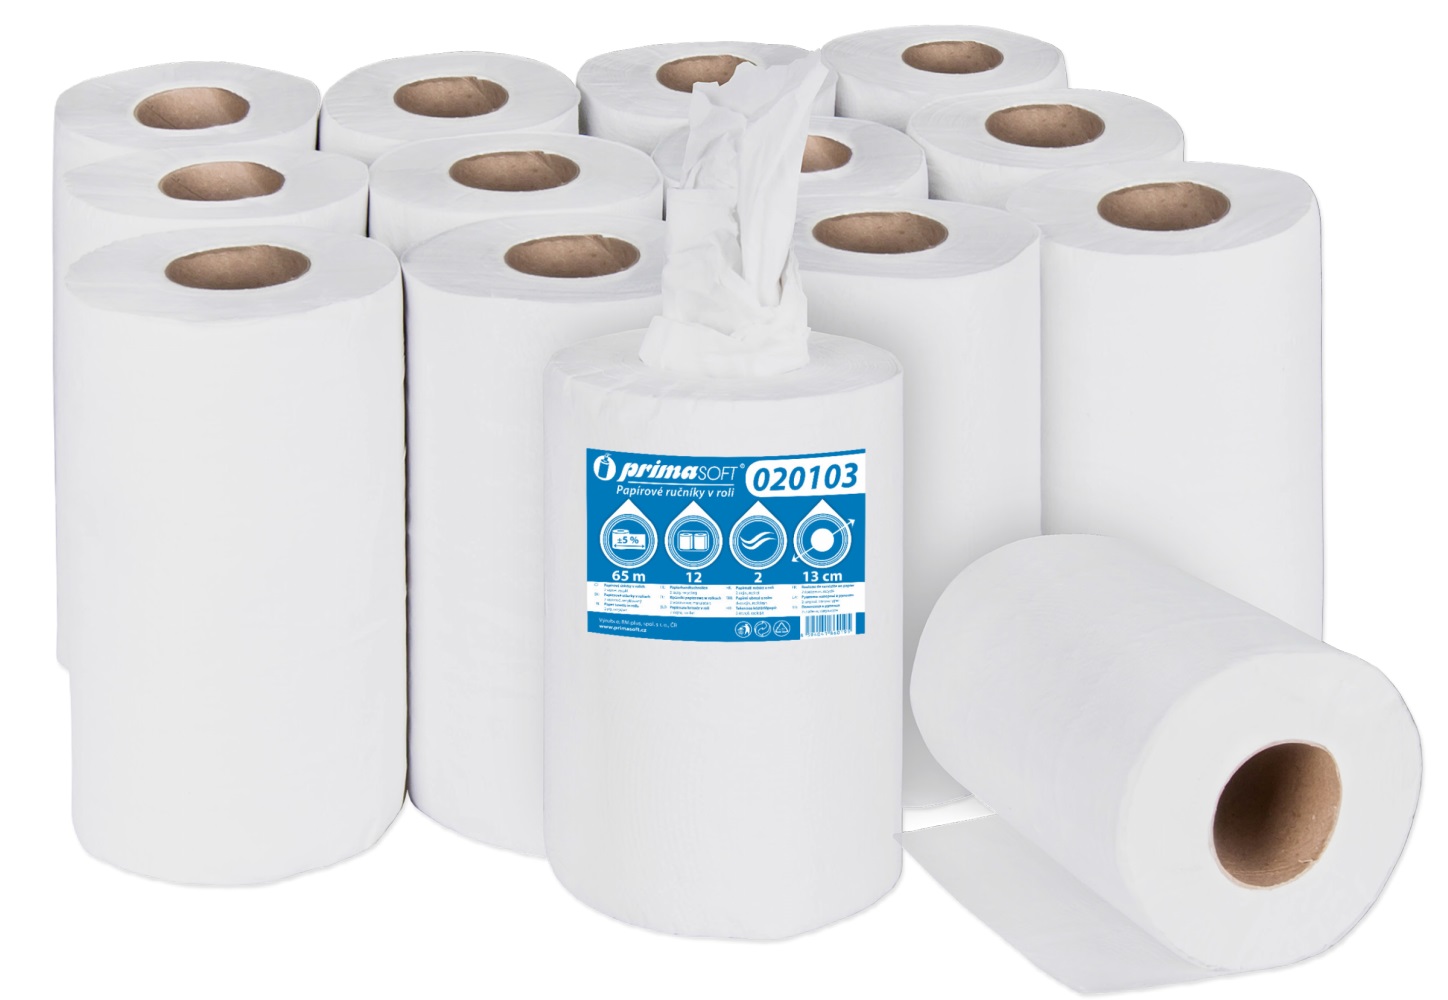 Primasoft Papírové ručníky v roli, dvouvrstvé, bělený recykl, 65 m, 12 rolí